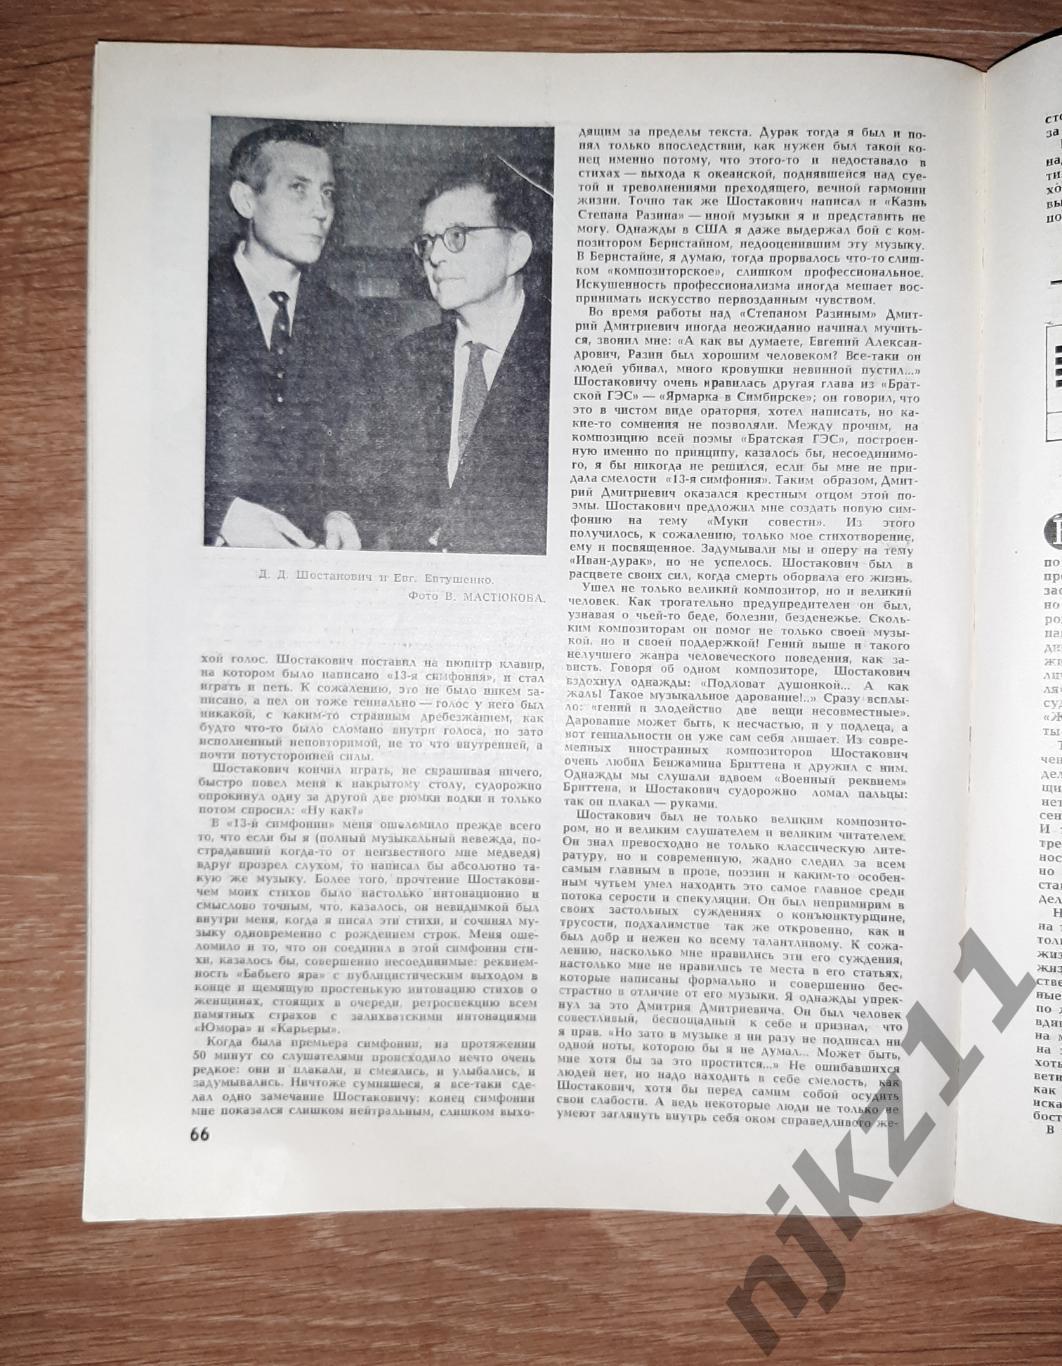 Юность 9 1976 Вениамин Смехов, Владимир Высоцкий, Шостакович, Евтушенко 7